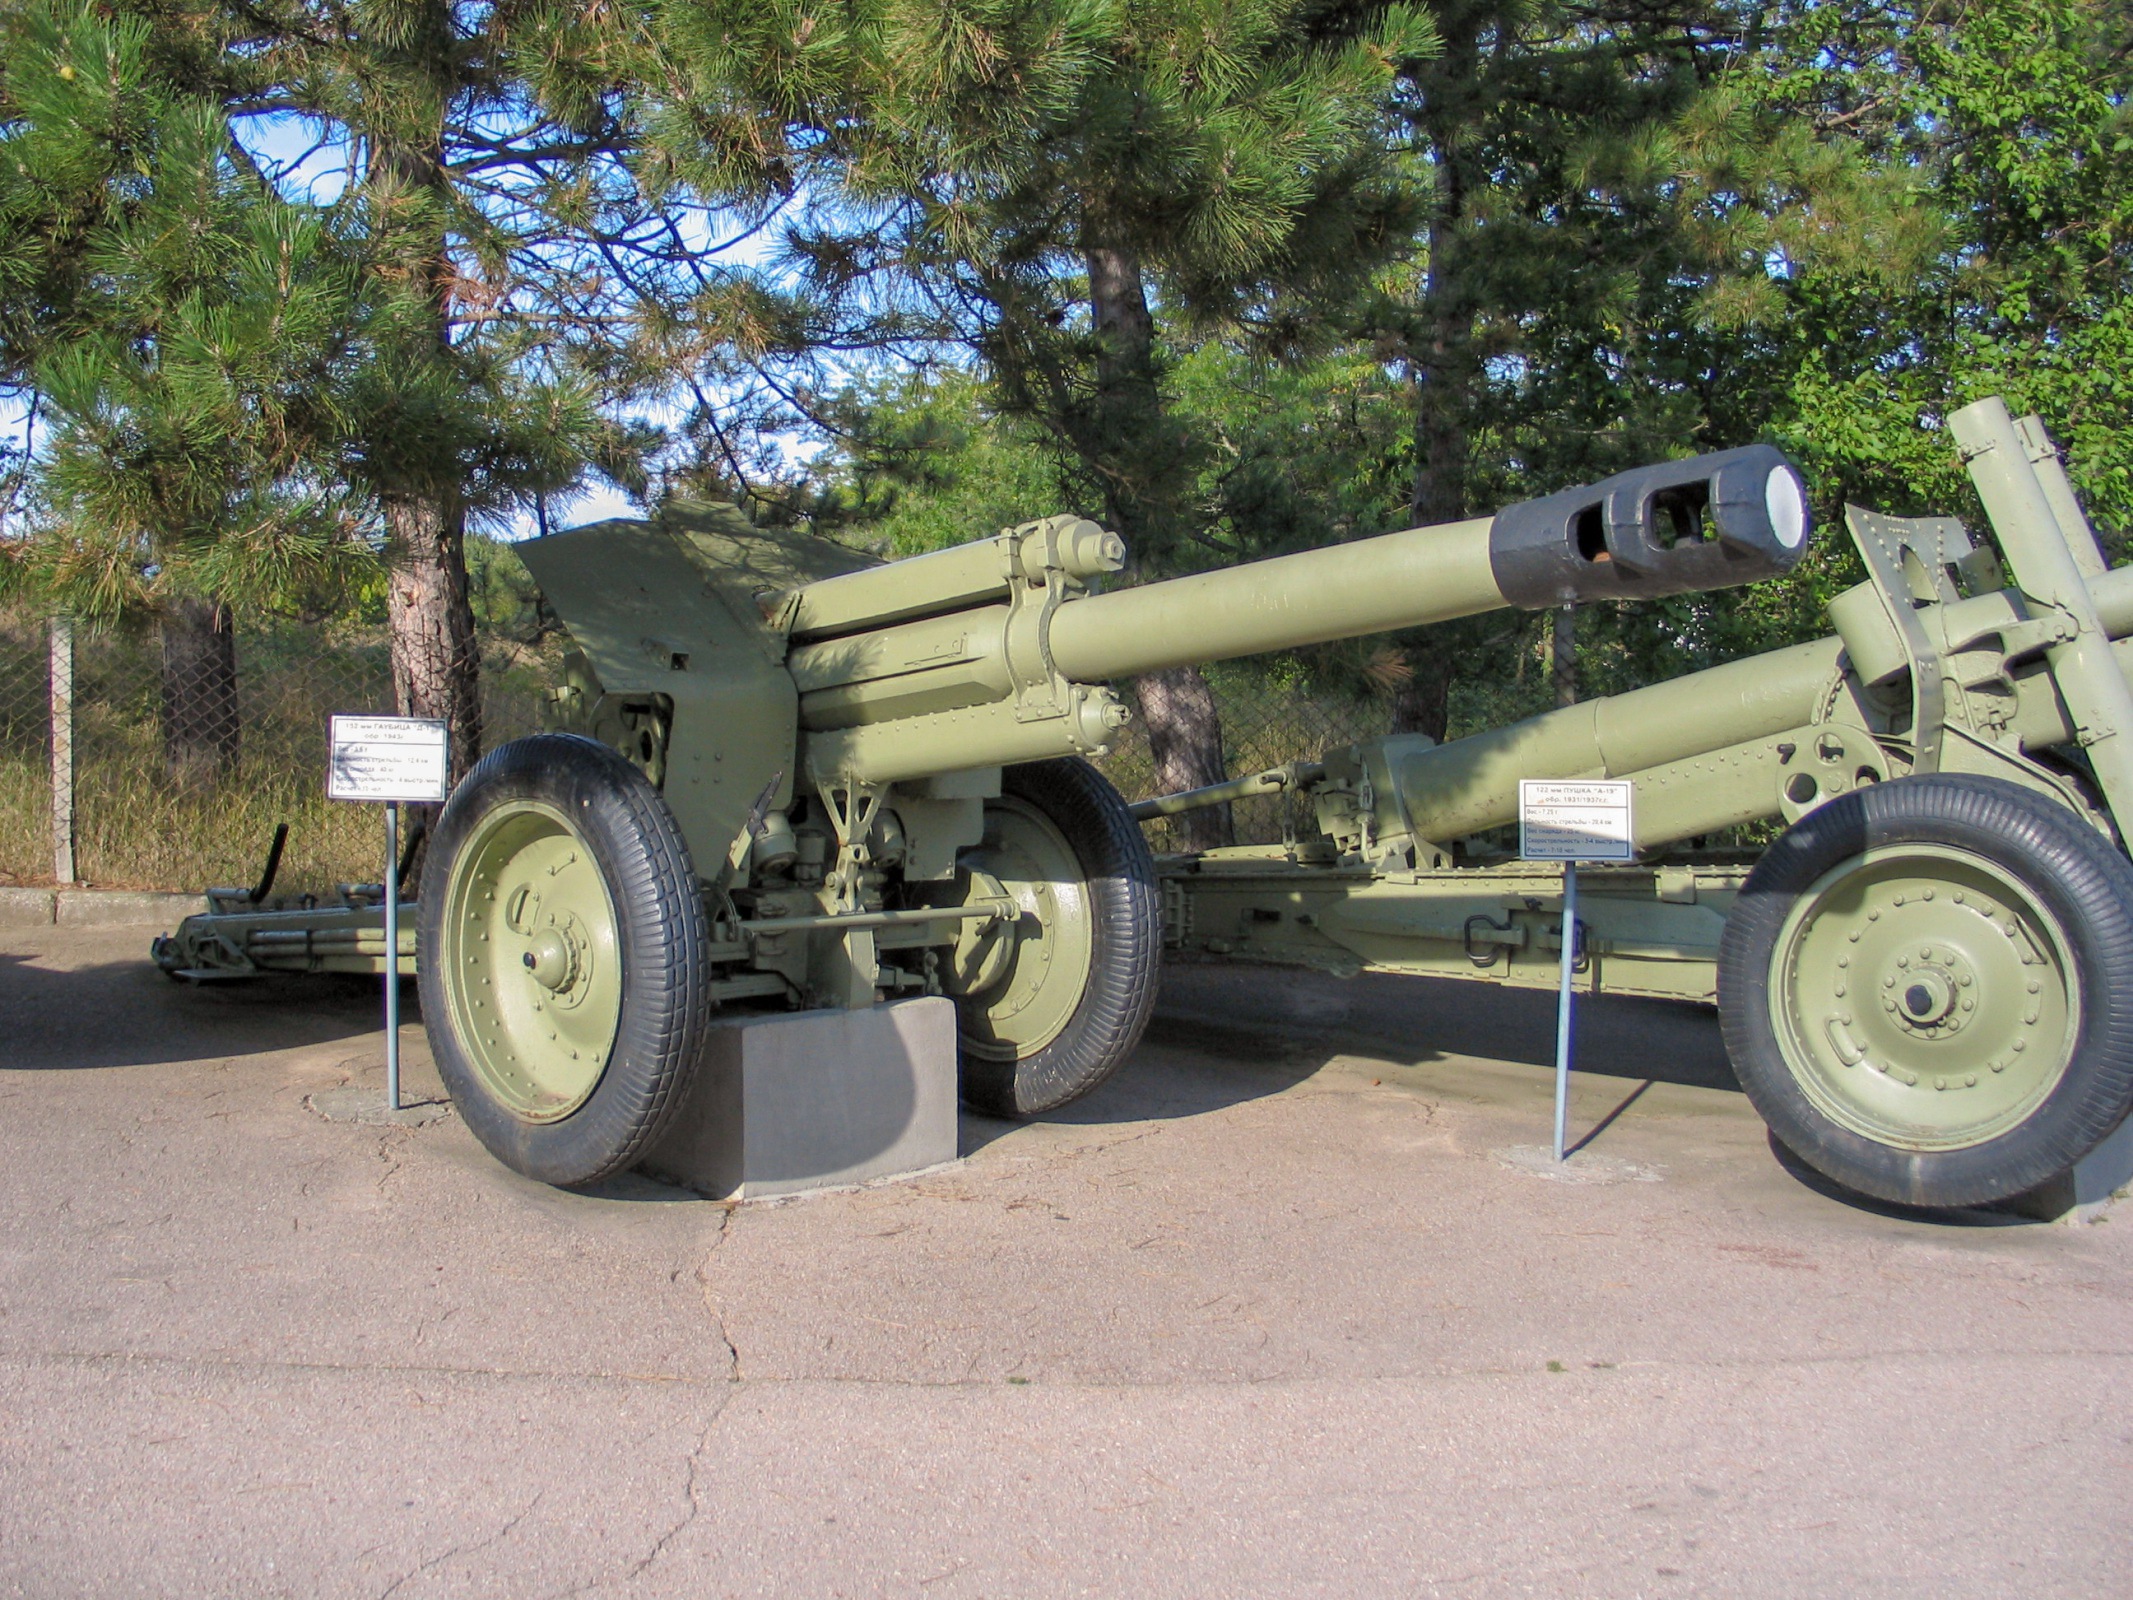 152 mm howitzer M1943 (D-1)